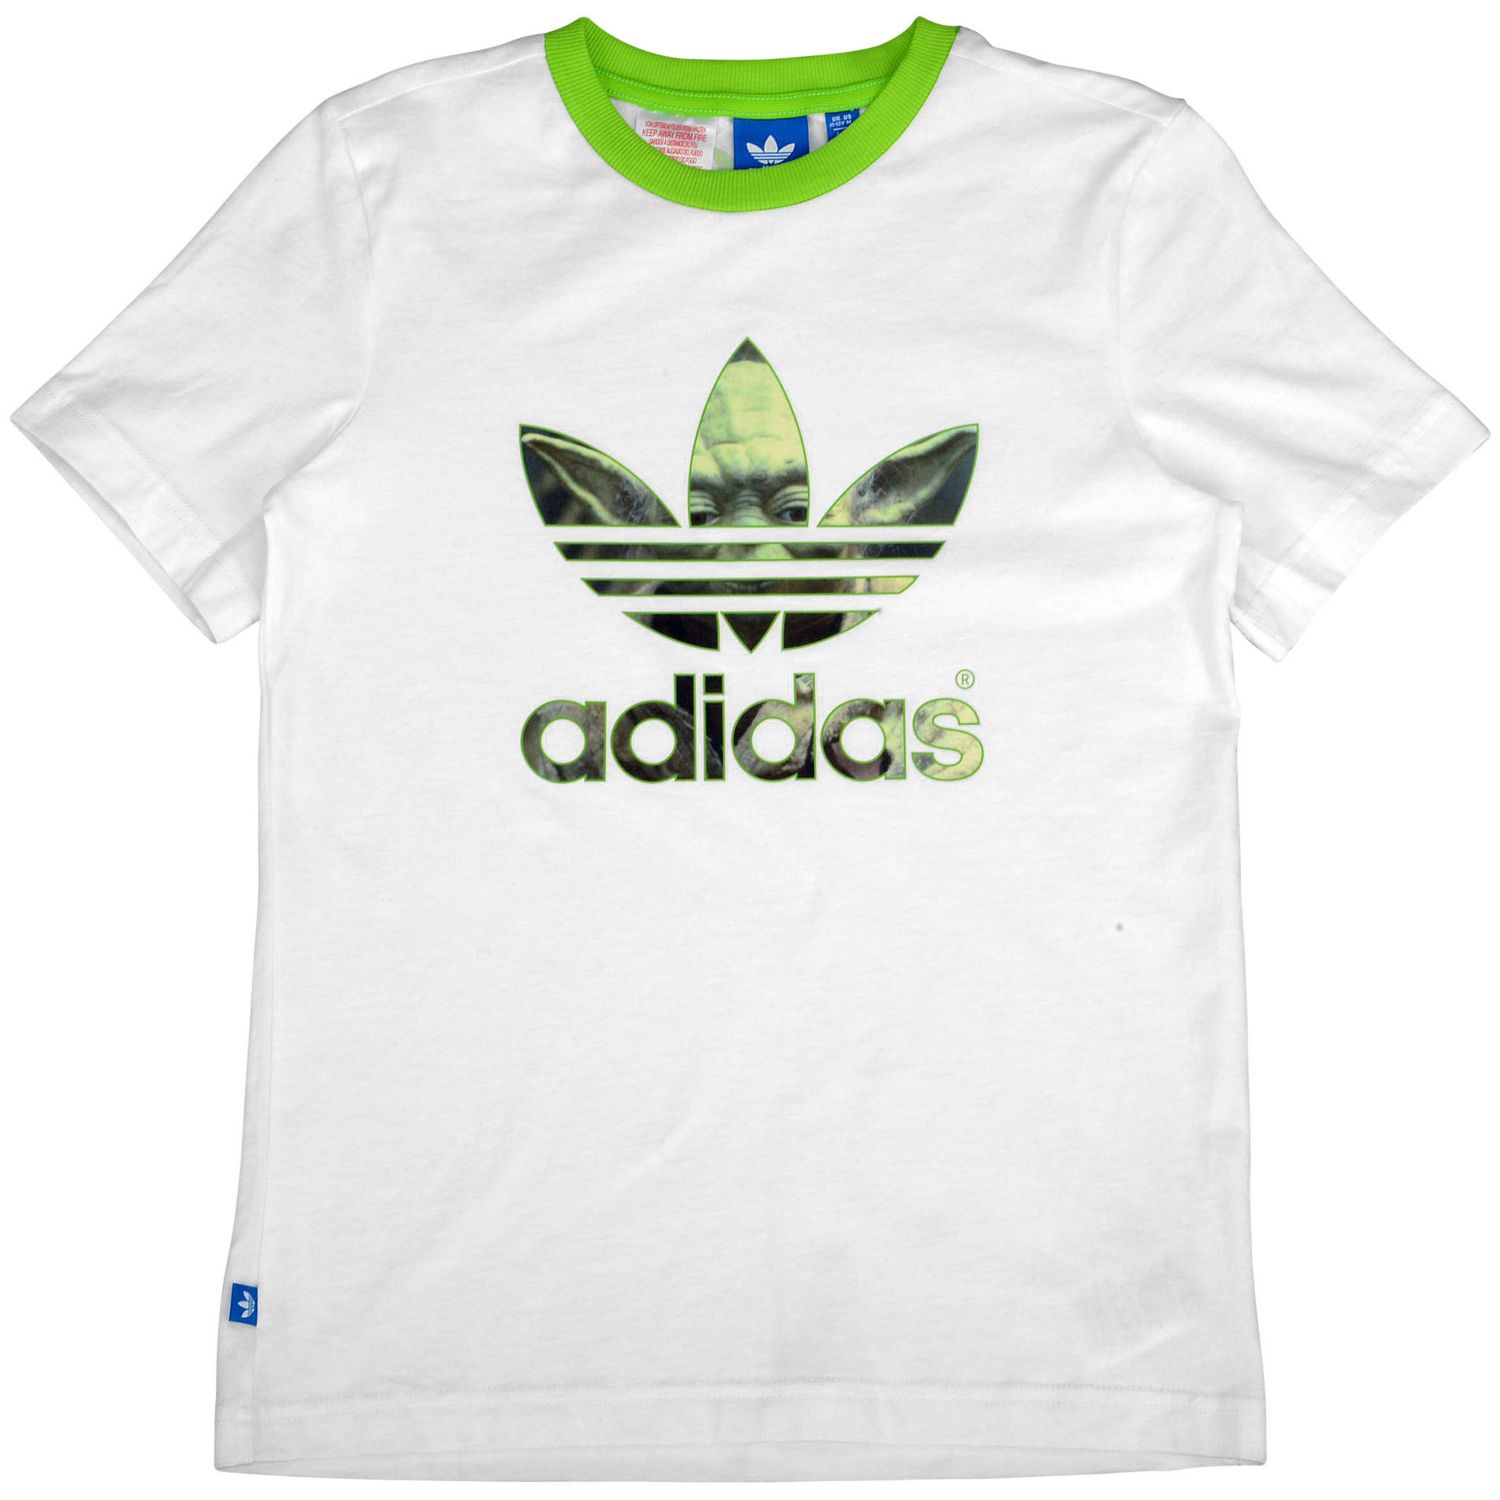 limpiar Inmundo satisfacción Adidas Originals Camiseta Niño Star Wars Yoda (blanco/verde)